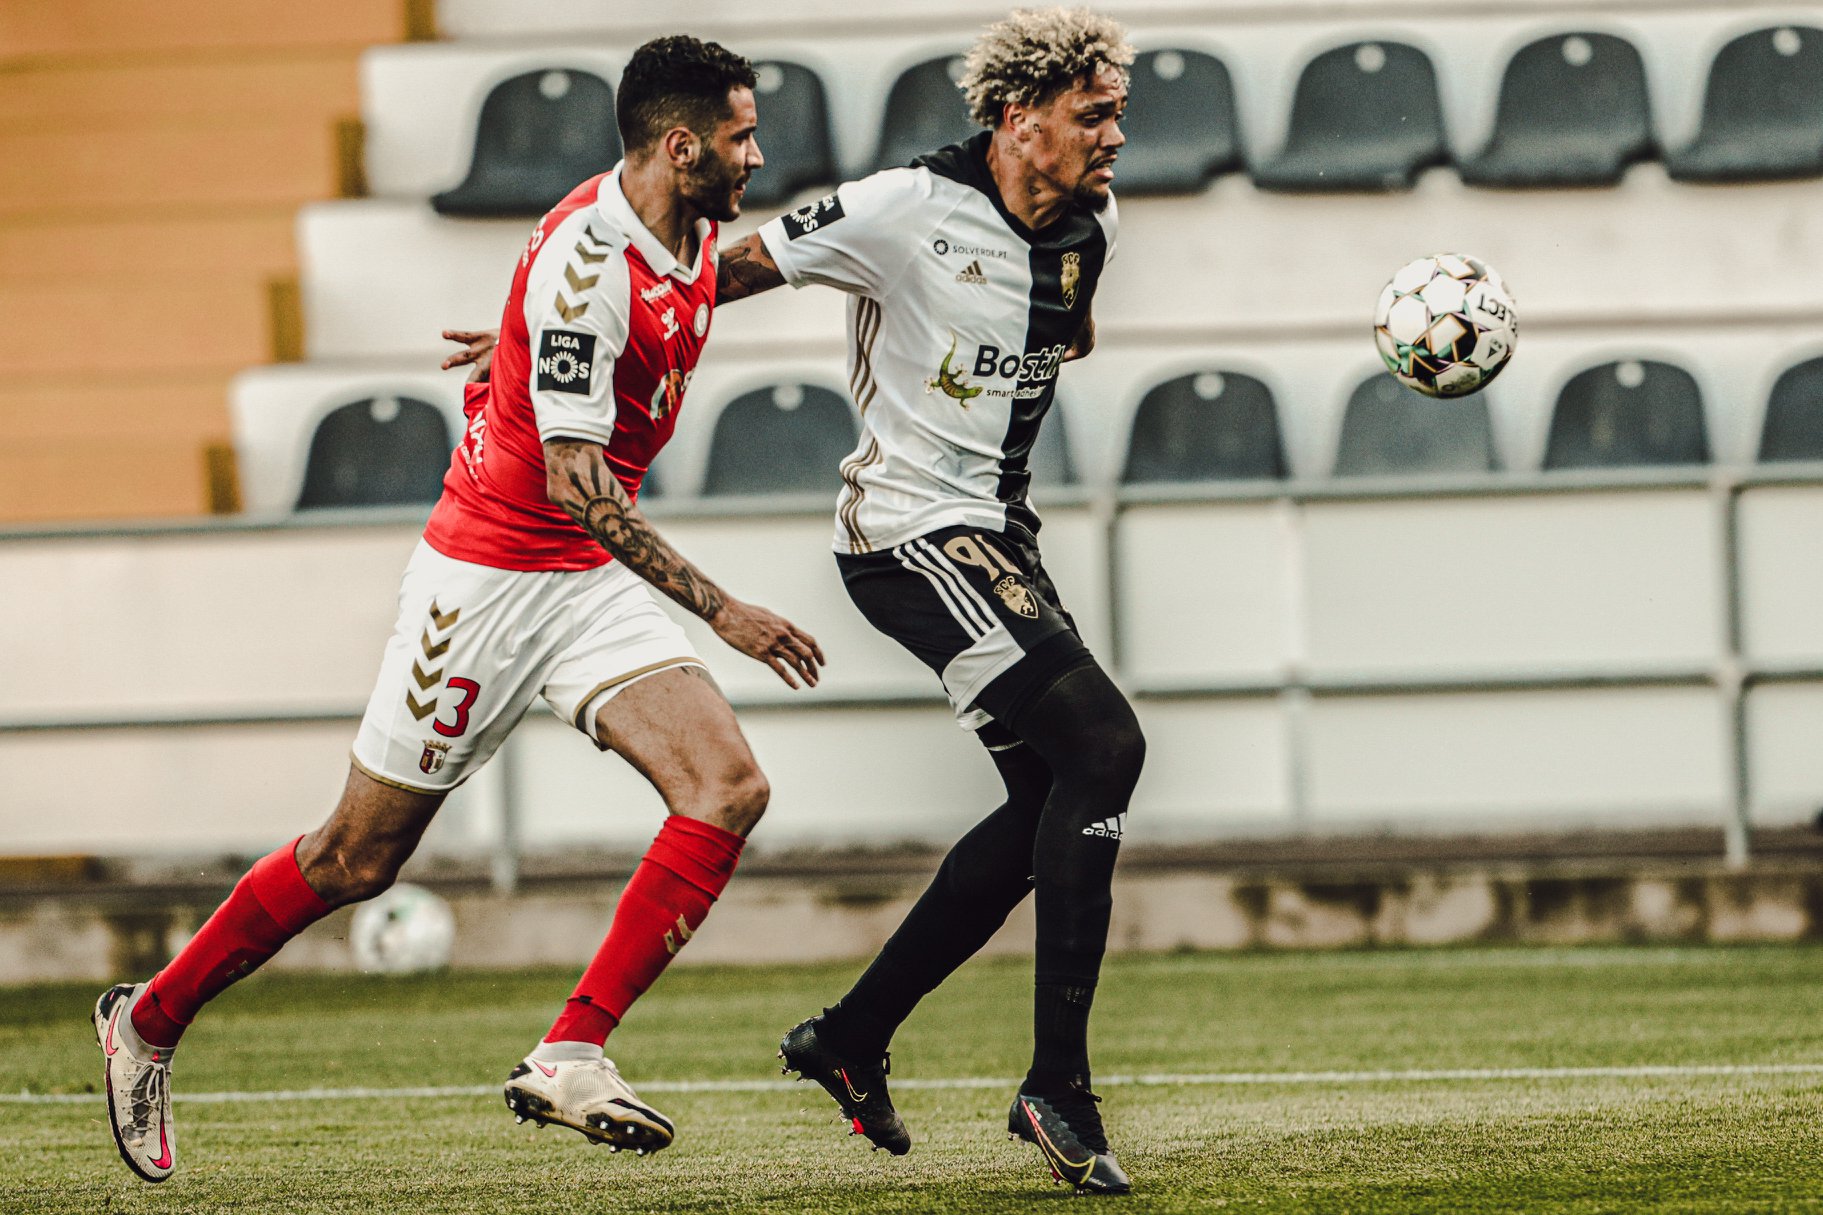 ▶️ SC Braga regressa aos triunfos em Faro